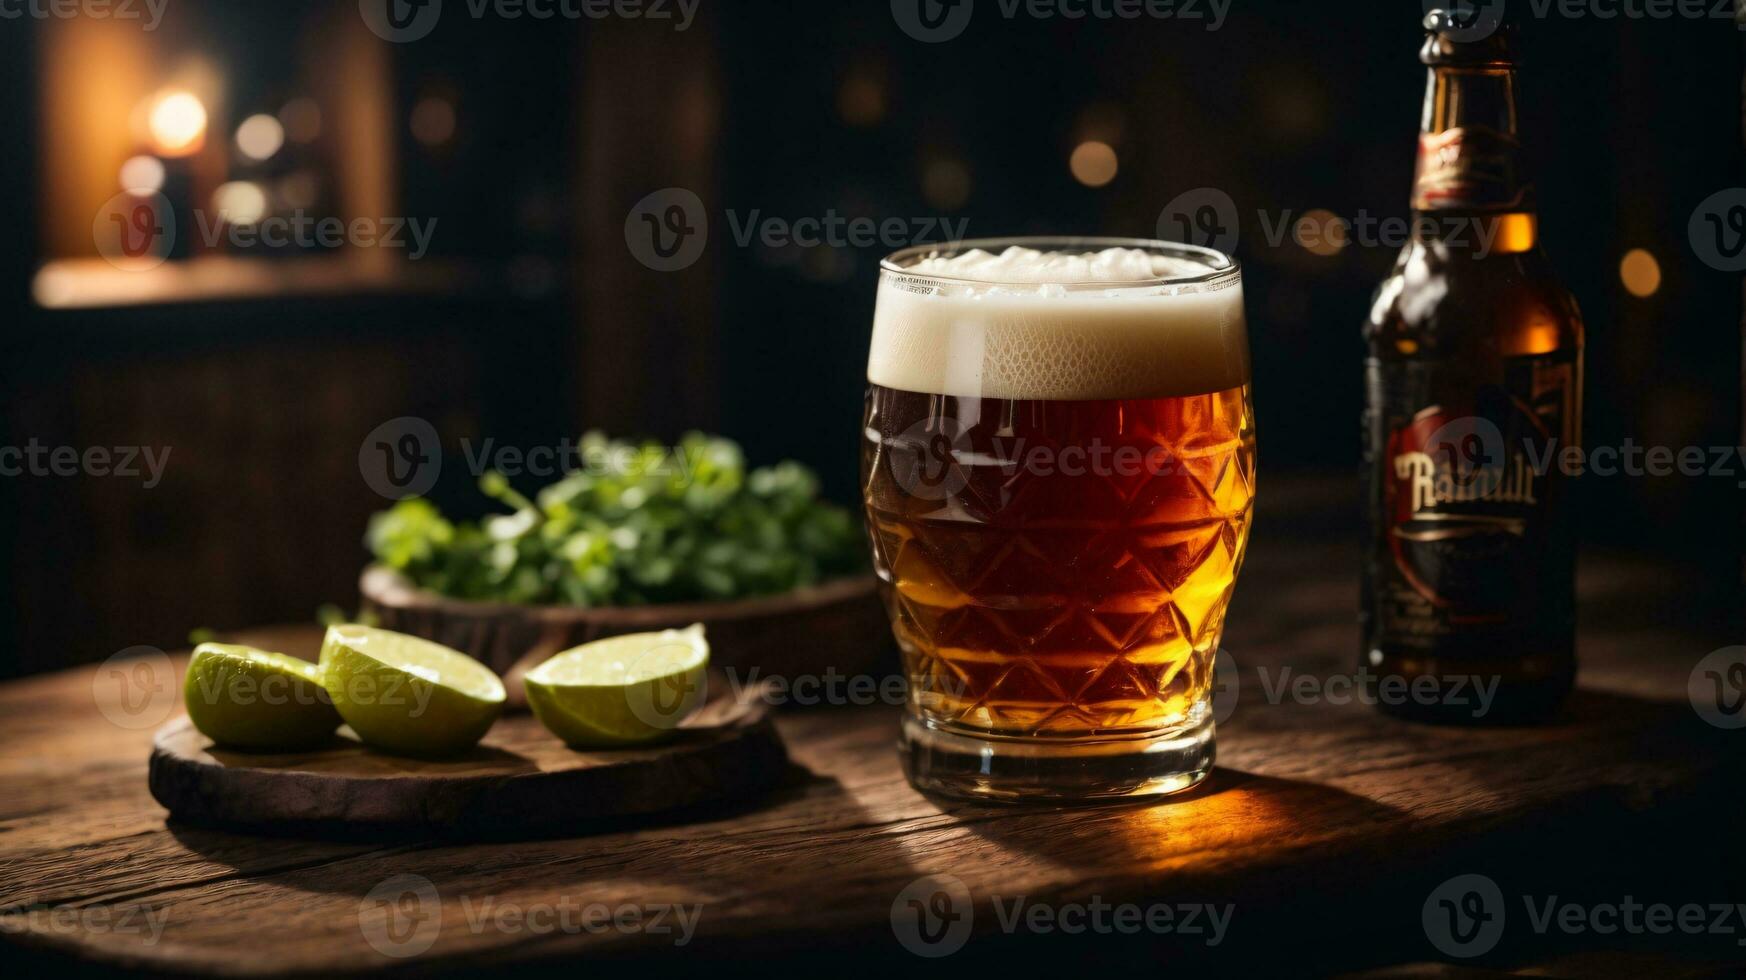 foto van glas bier en snacks met fles in achtergrond in bar